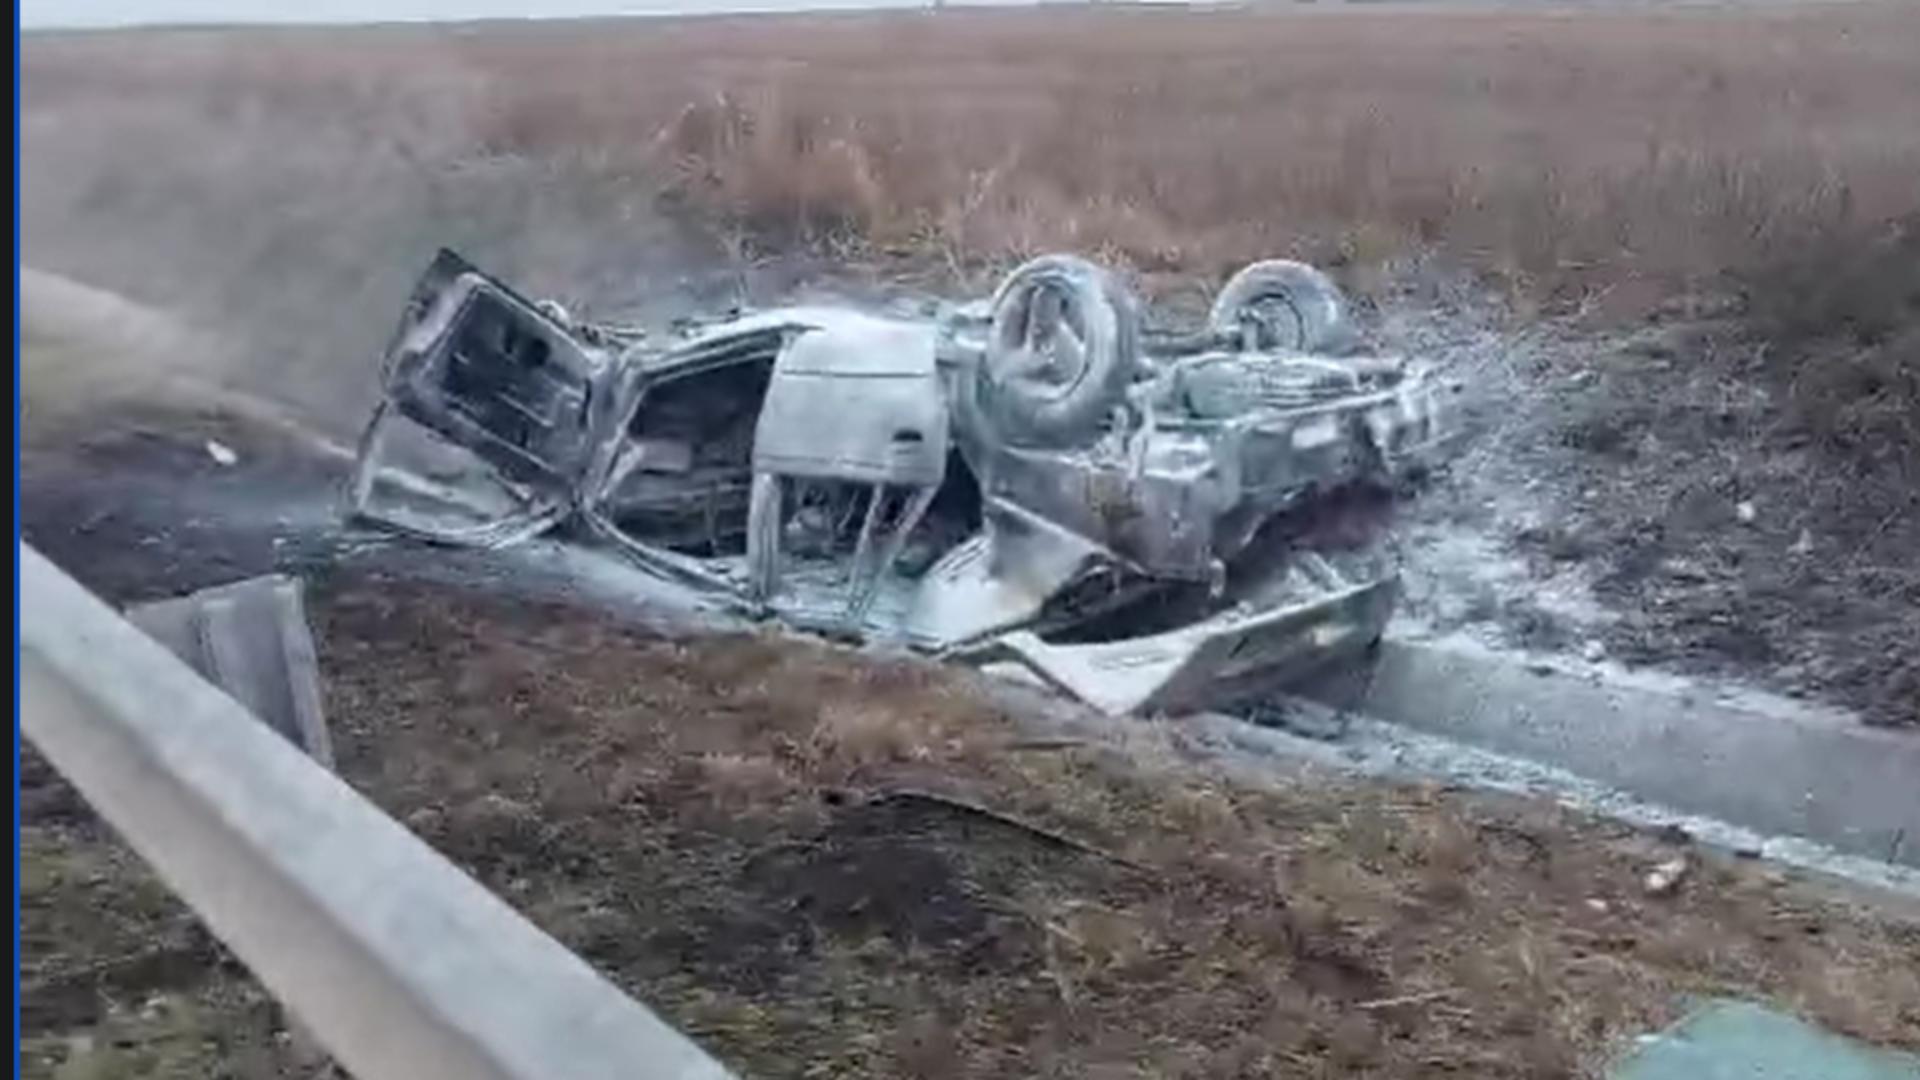 Sfârșit GROAZNIC pentru un șofer din Deveselu. A fost carbonizat în propriul autoturism, după un accident – VIDEO